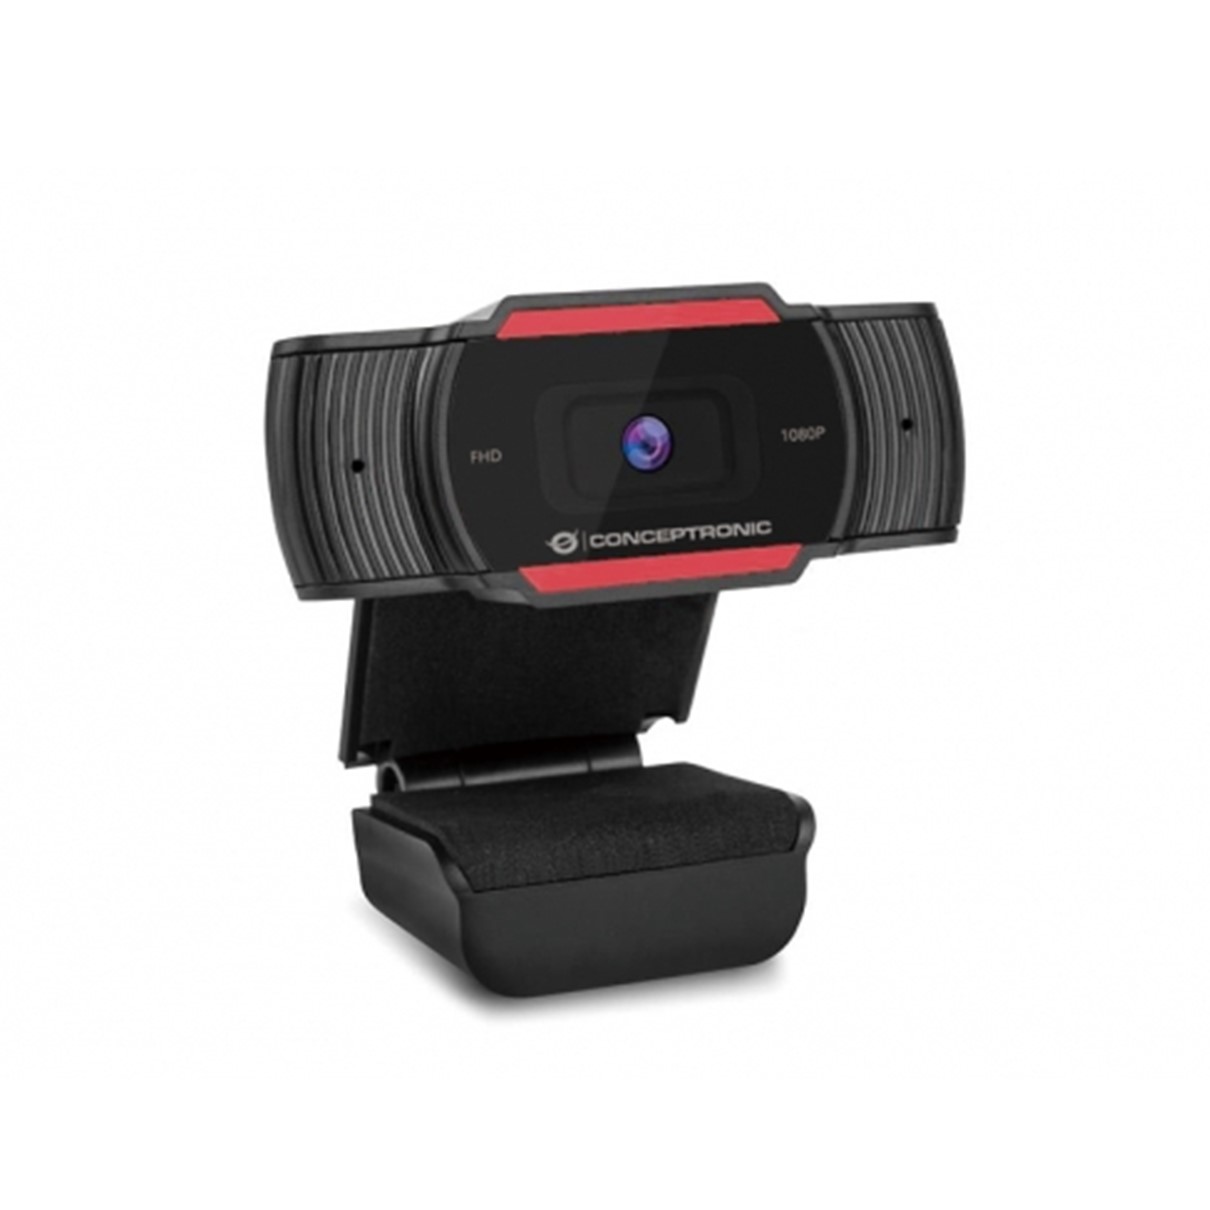 Webcam fhd conceptronic amdis04r - 1080p -  usb - foco fijo - 30 fps -  microfono integrado